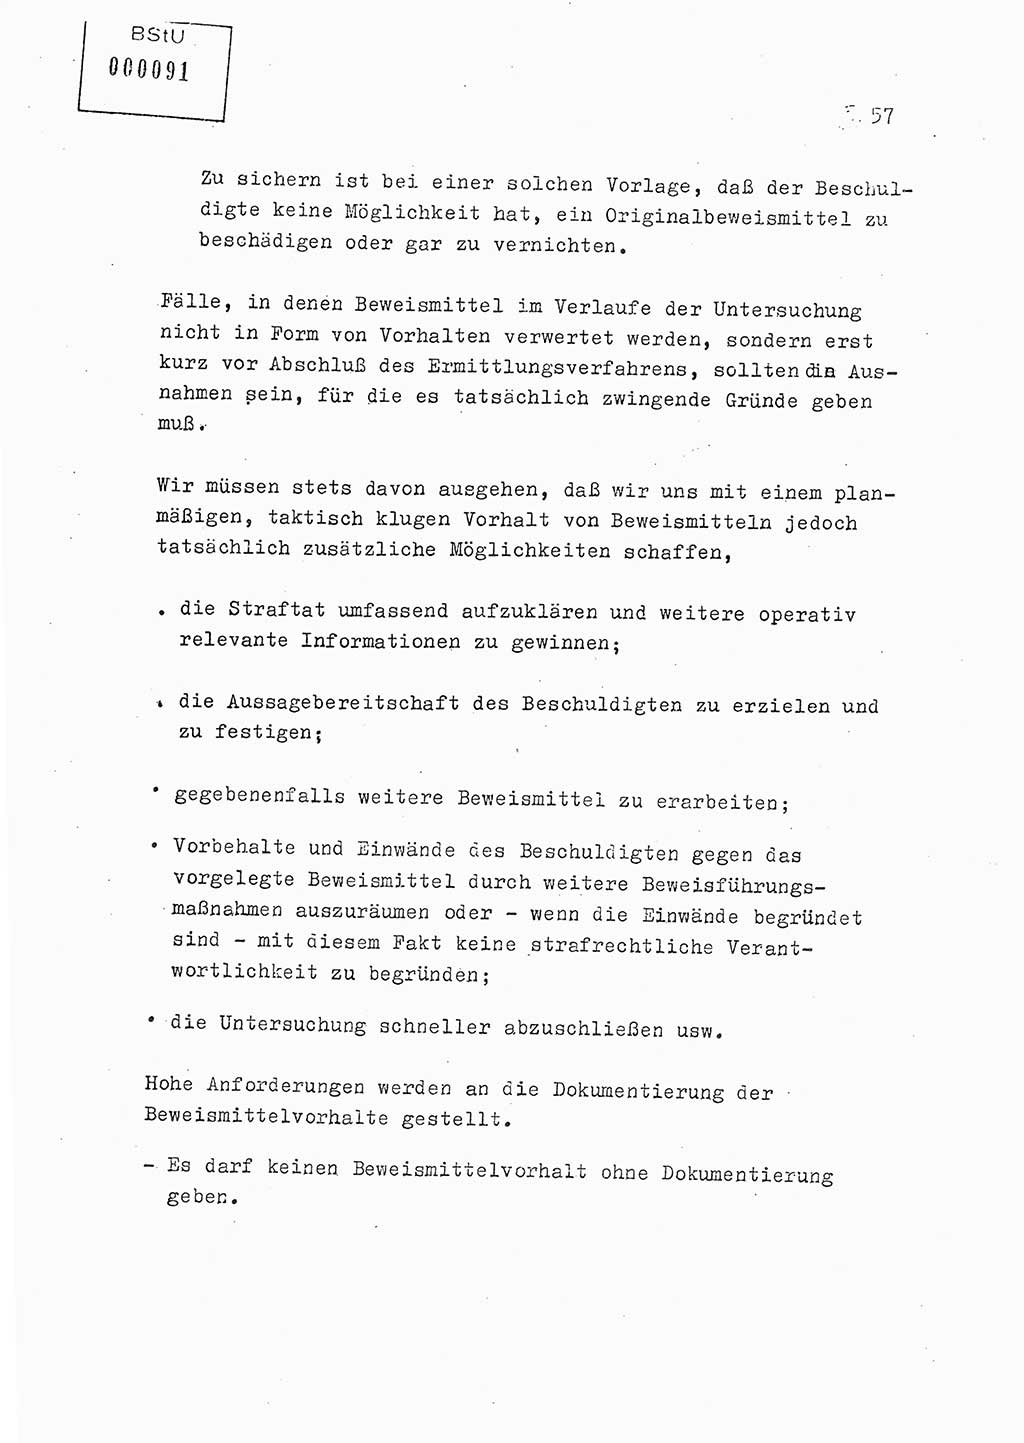 Lektion Ministerium für Staatssicherheit (MfS) [Deutsche Demokratische Republik (DDR)], Hauptabteilung (HA) Ⅸ, Berlin 1979, Seite 57 (Lekt. Bew.-Fü. EV MfS DDR HA Ⅸ 1979, S. 57)